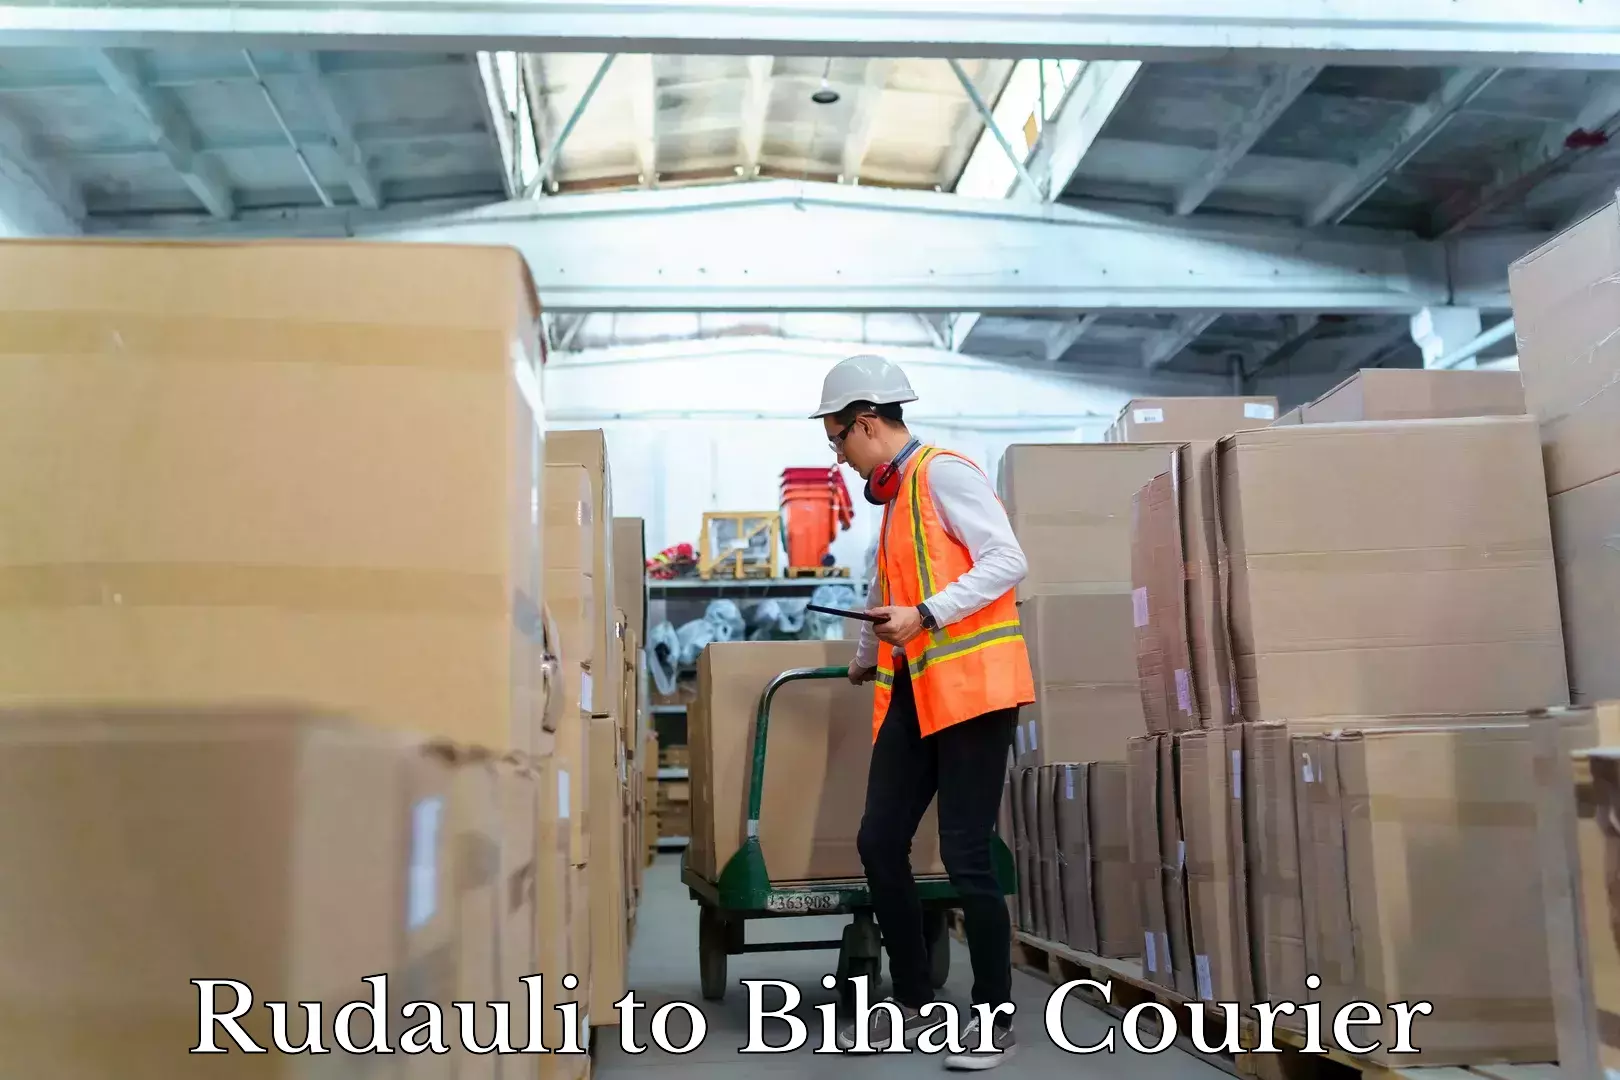 Quality courier services Rudauli to Bihar